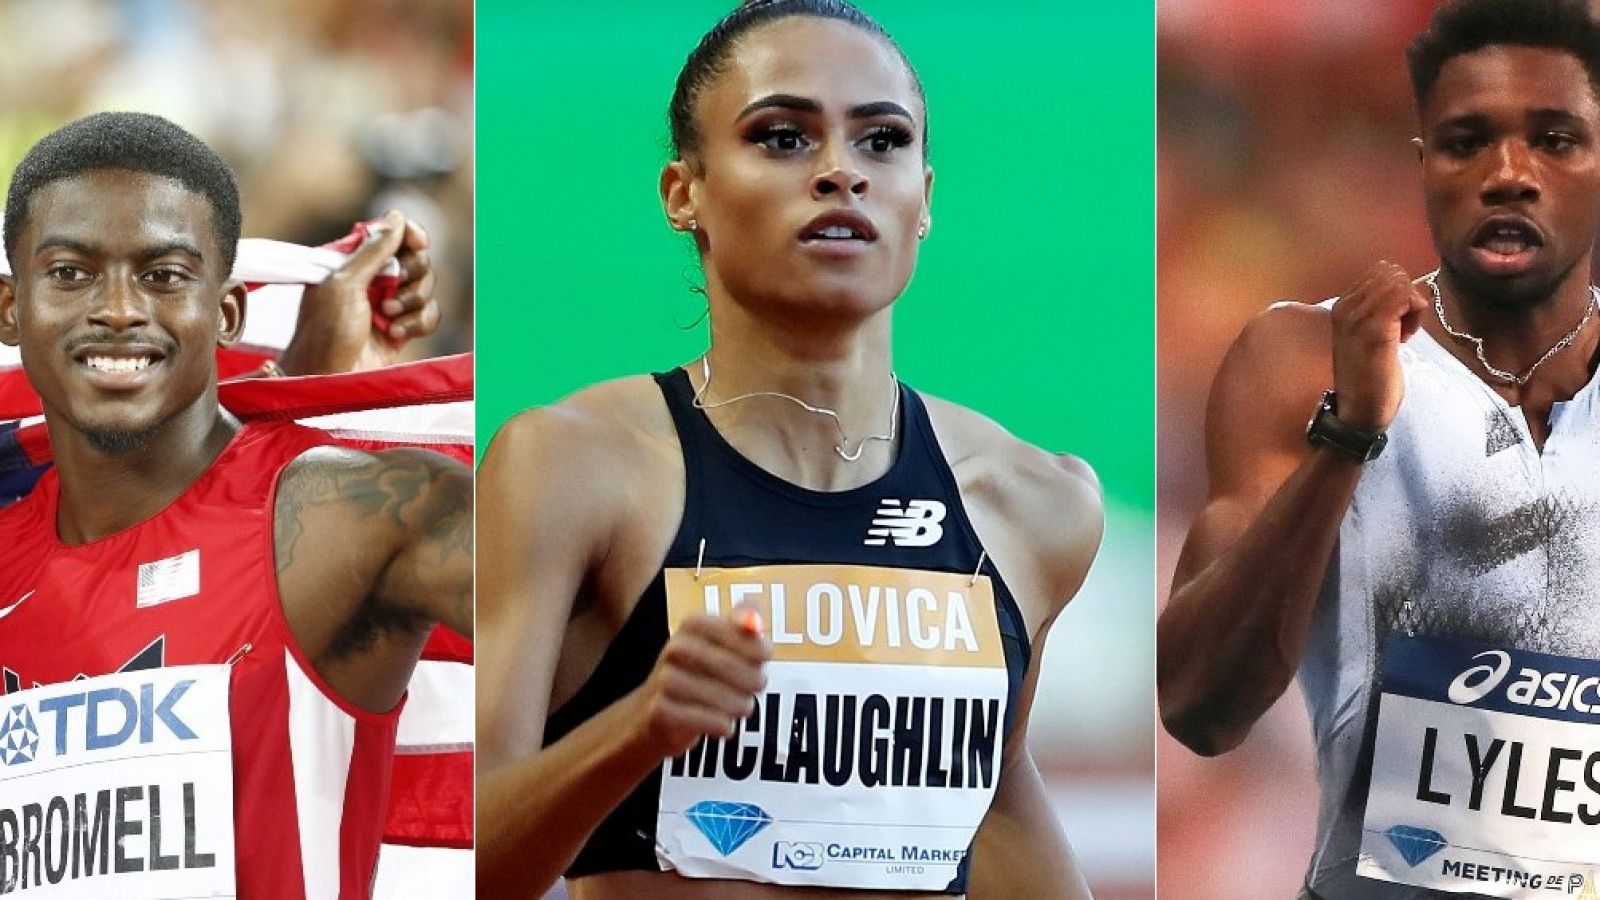 Trayvon  Bromell, Sydney McLauhlin y Noha Lyles, estrellas del mitin de atletismo de Nueva York.